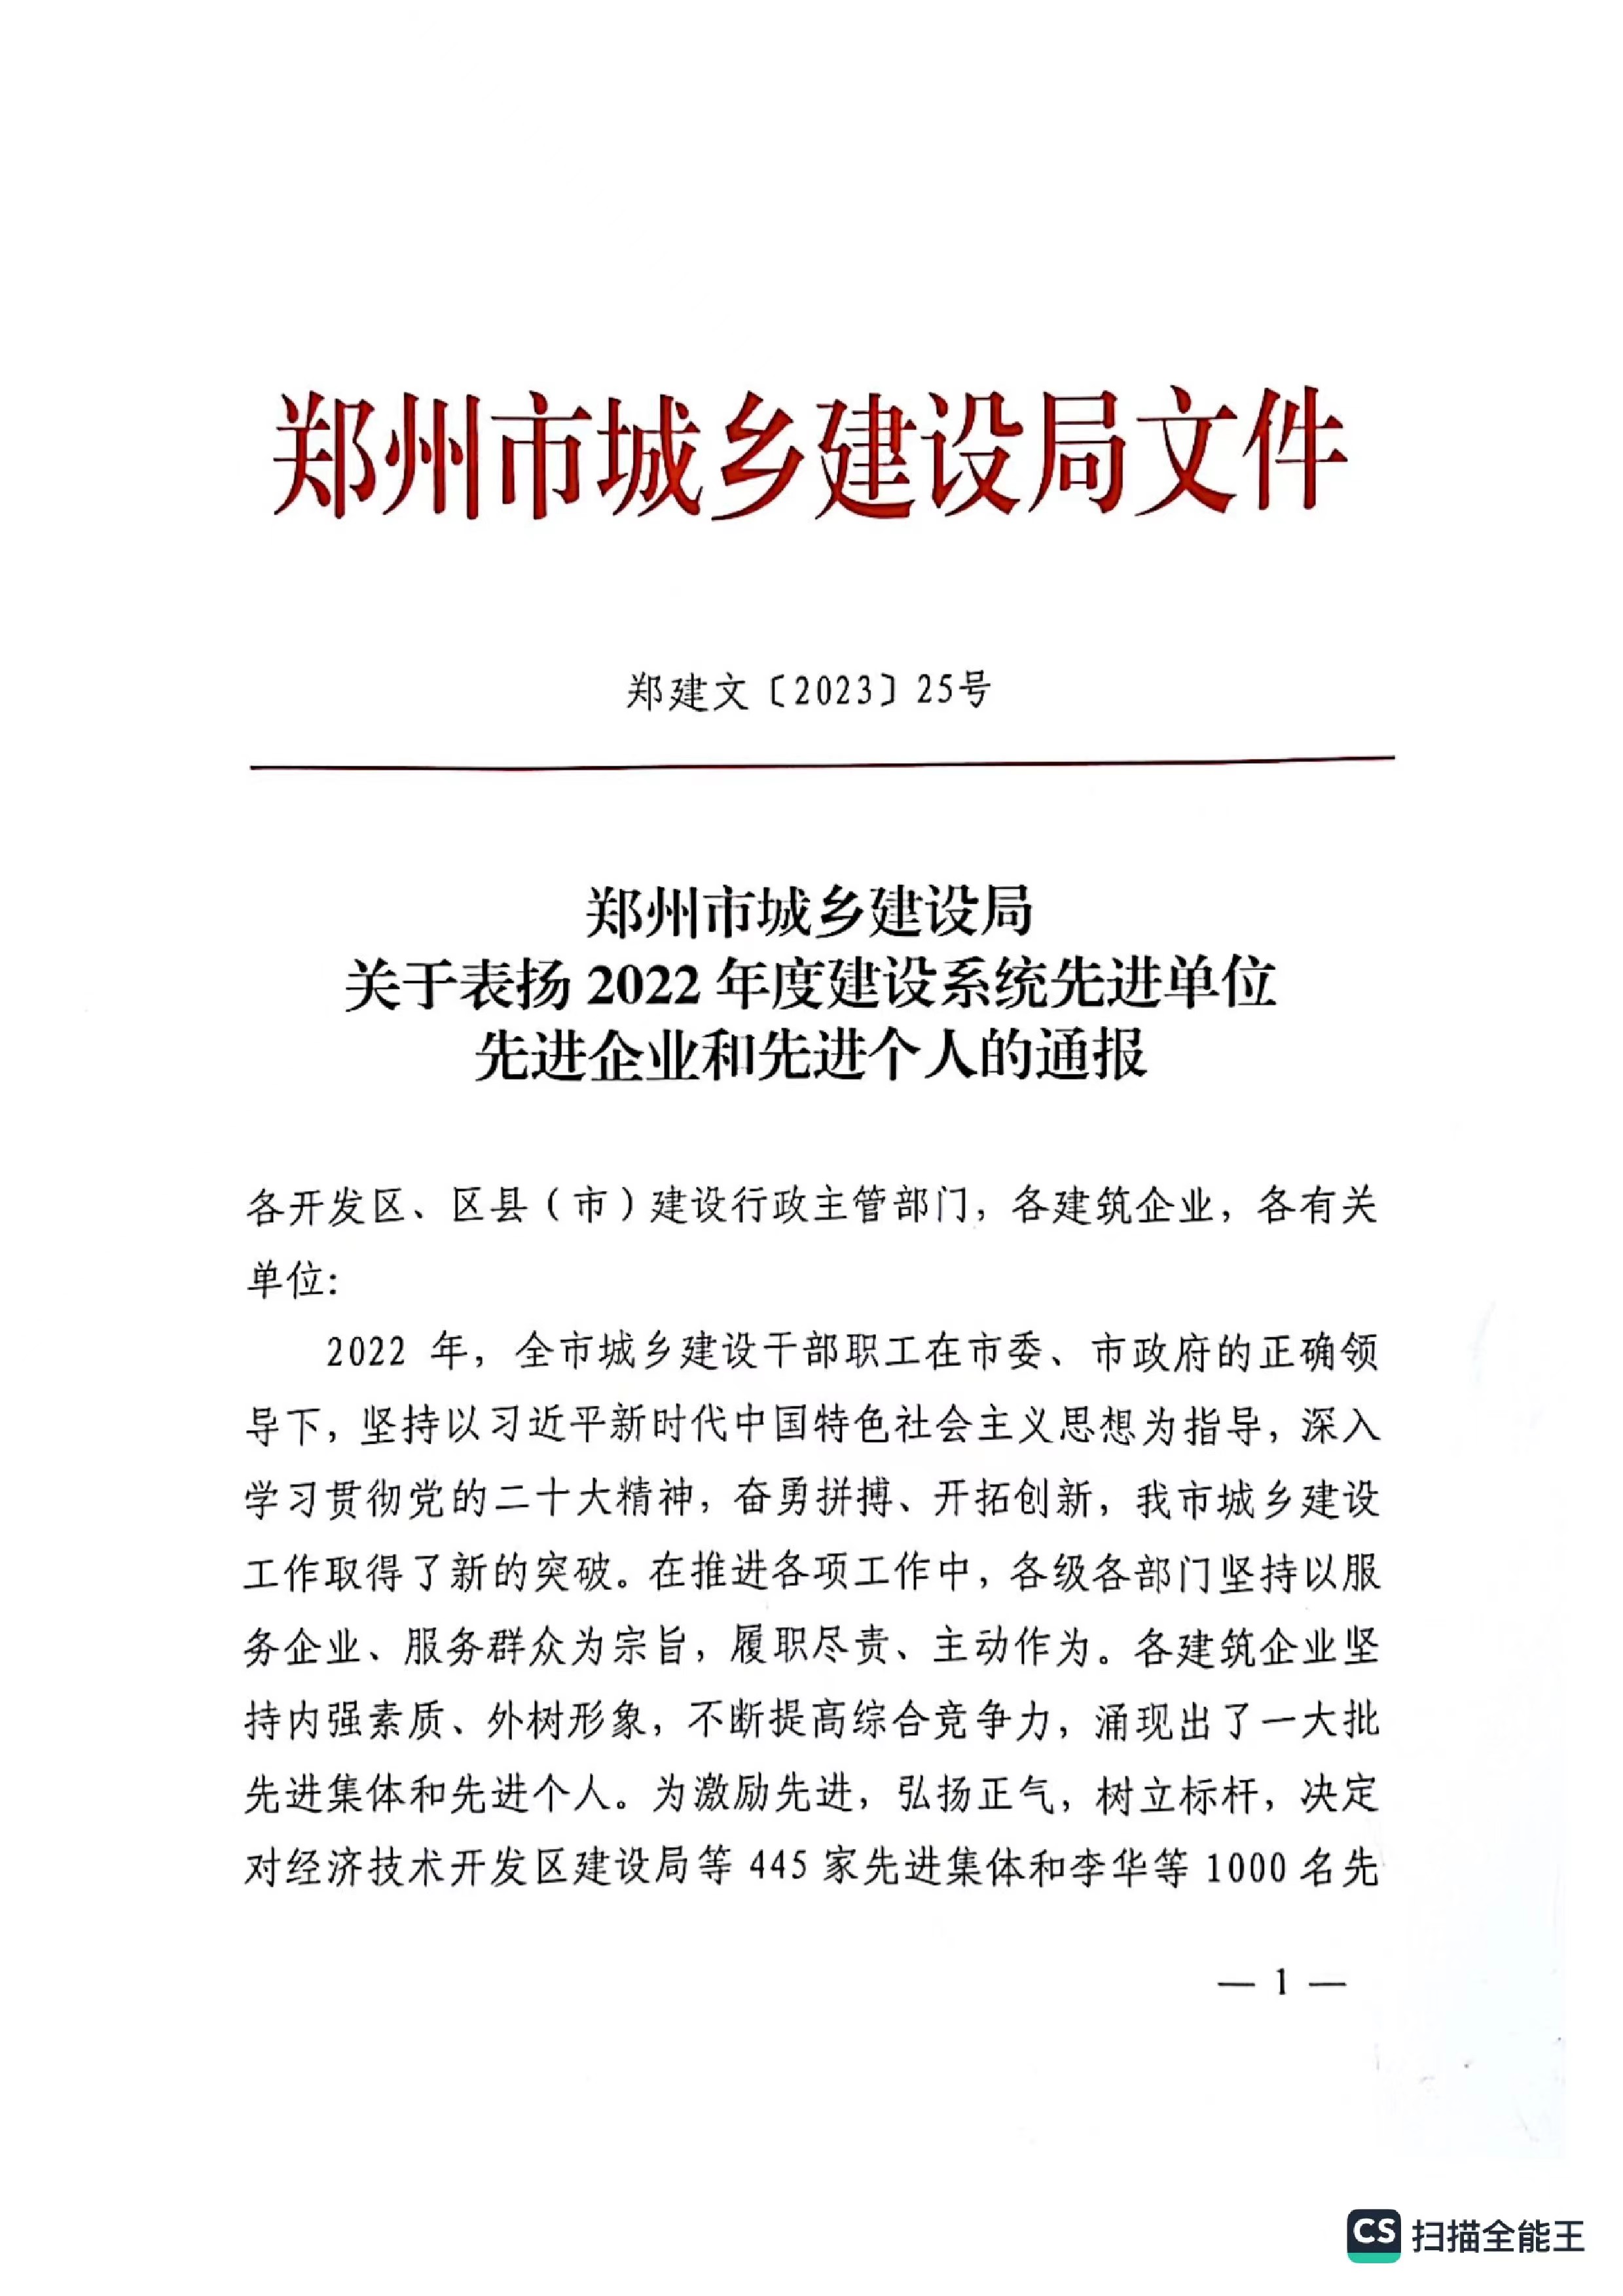 熱烈祝賀我公司獲得鄭州市城鄉建設局評定“2022年度建設系統先進單位“企業稱號。